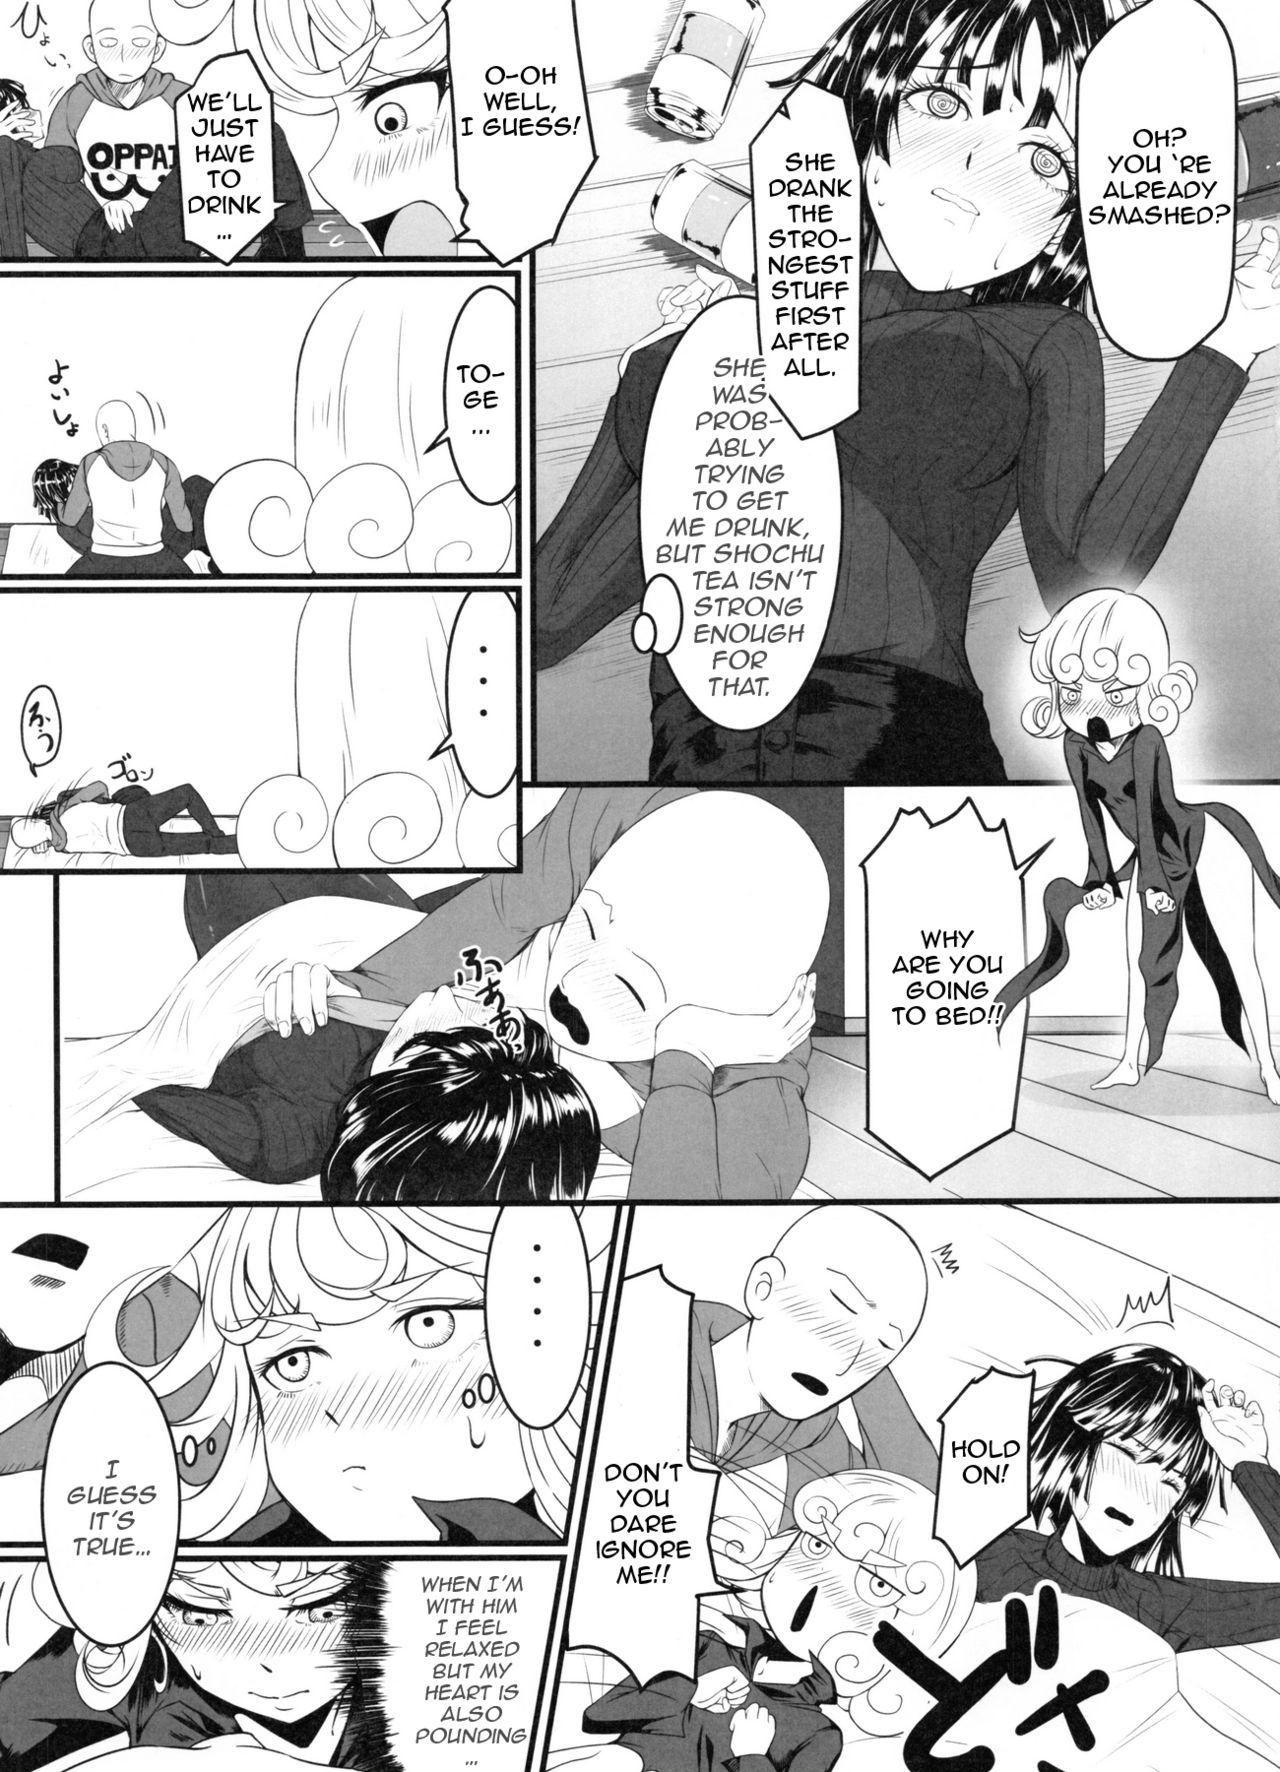 Free Fuck Dekoboko Love Sister 2-gekime! - One punch man Sensual - Page 6